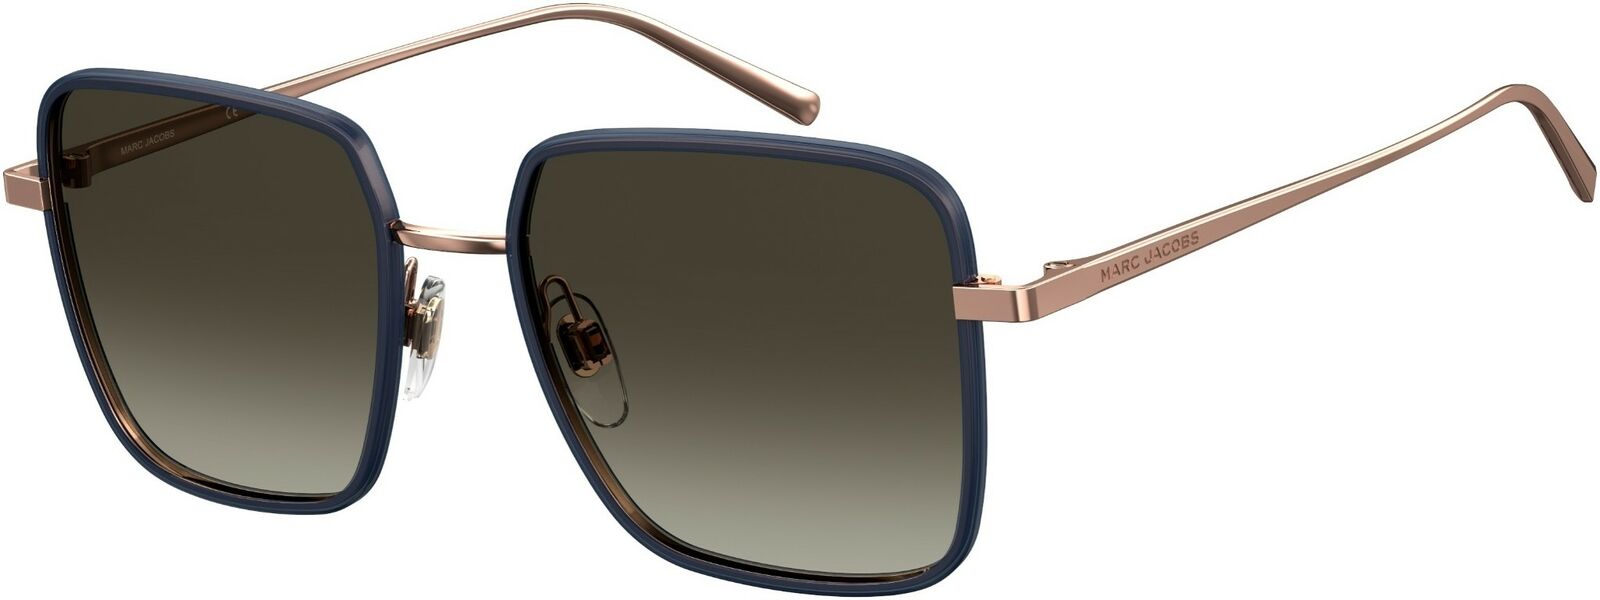 Marc Jacobs Marc 477/S 02IK/HA Blue Gold/Brown Gradient Sunglasses